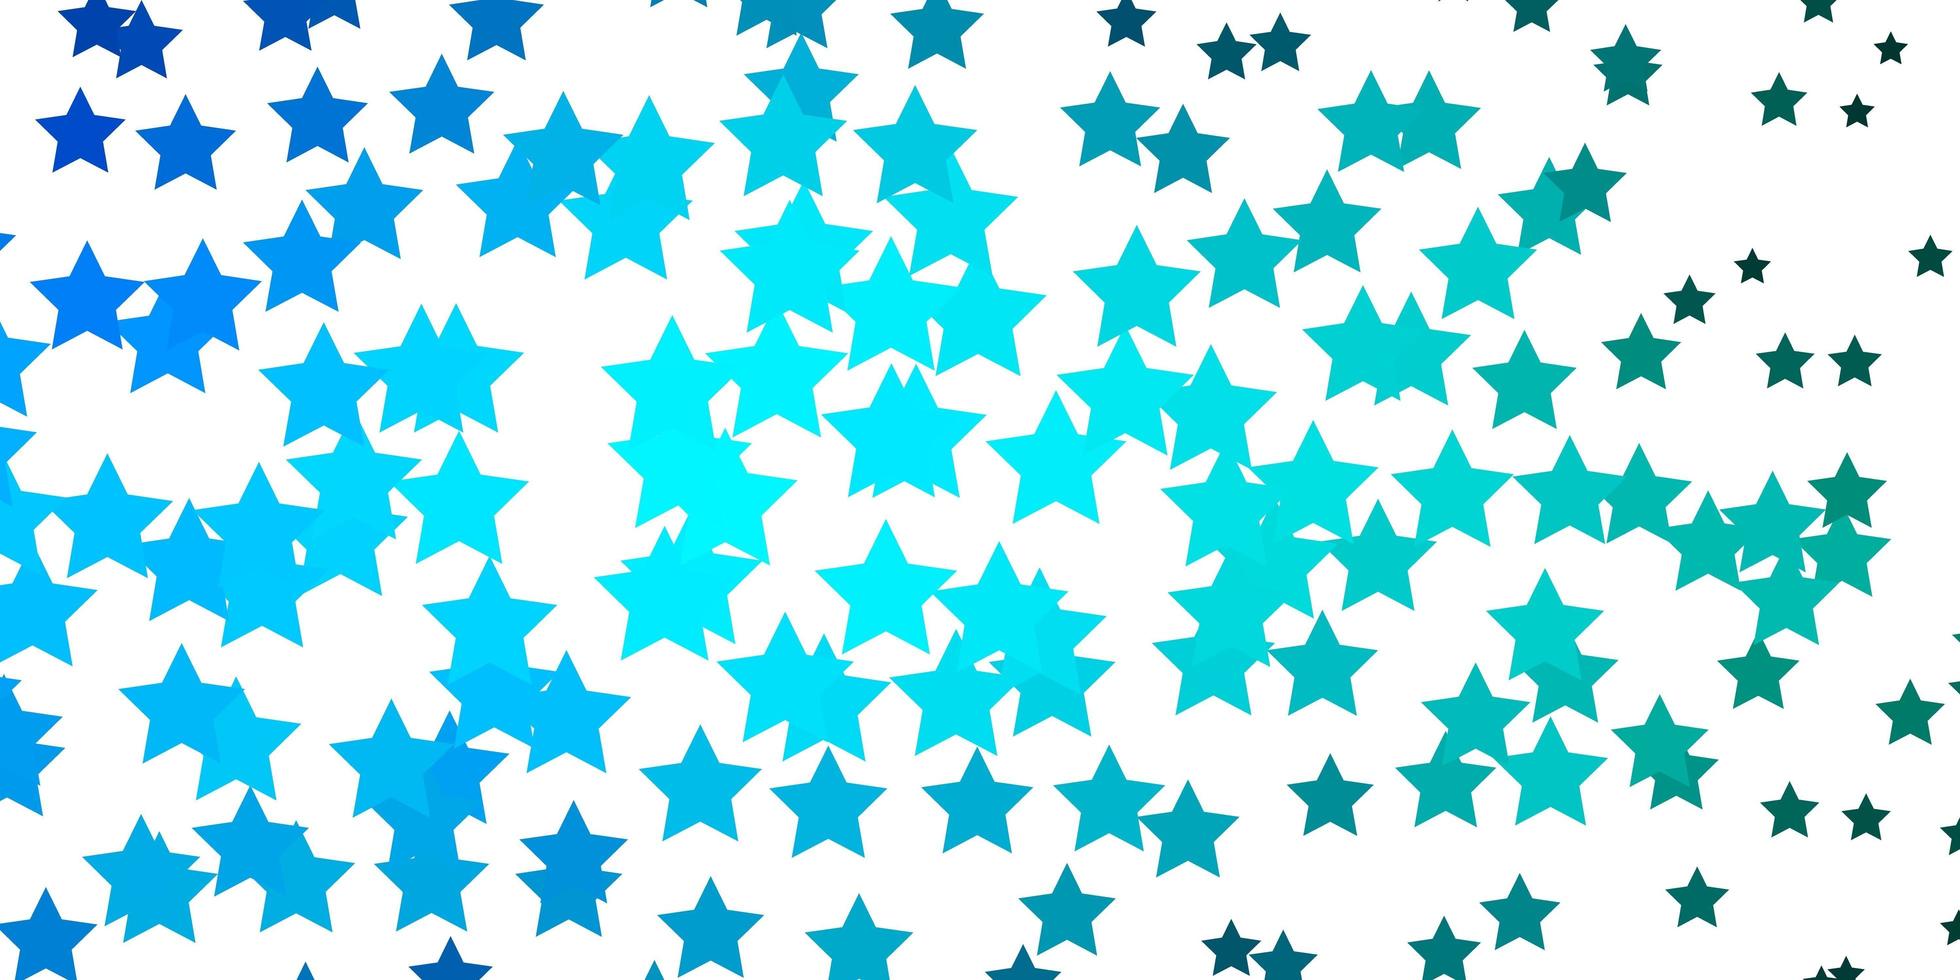 fond de vecteur bleu clair, vert avec de petites et grandes étoiles